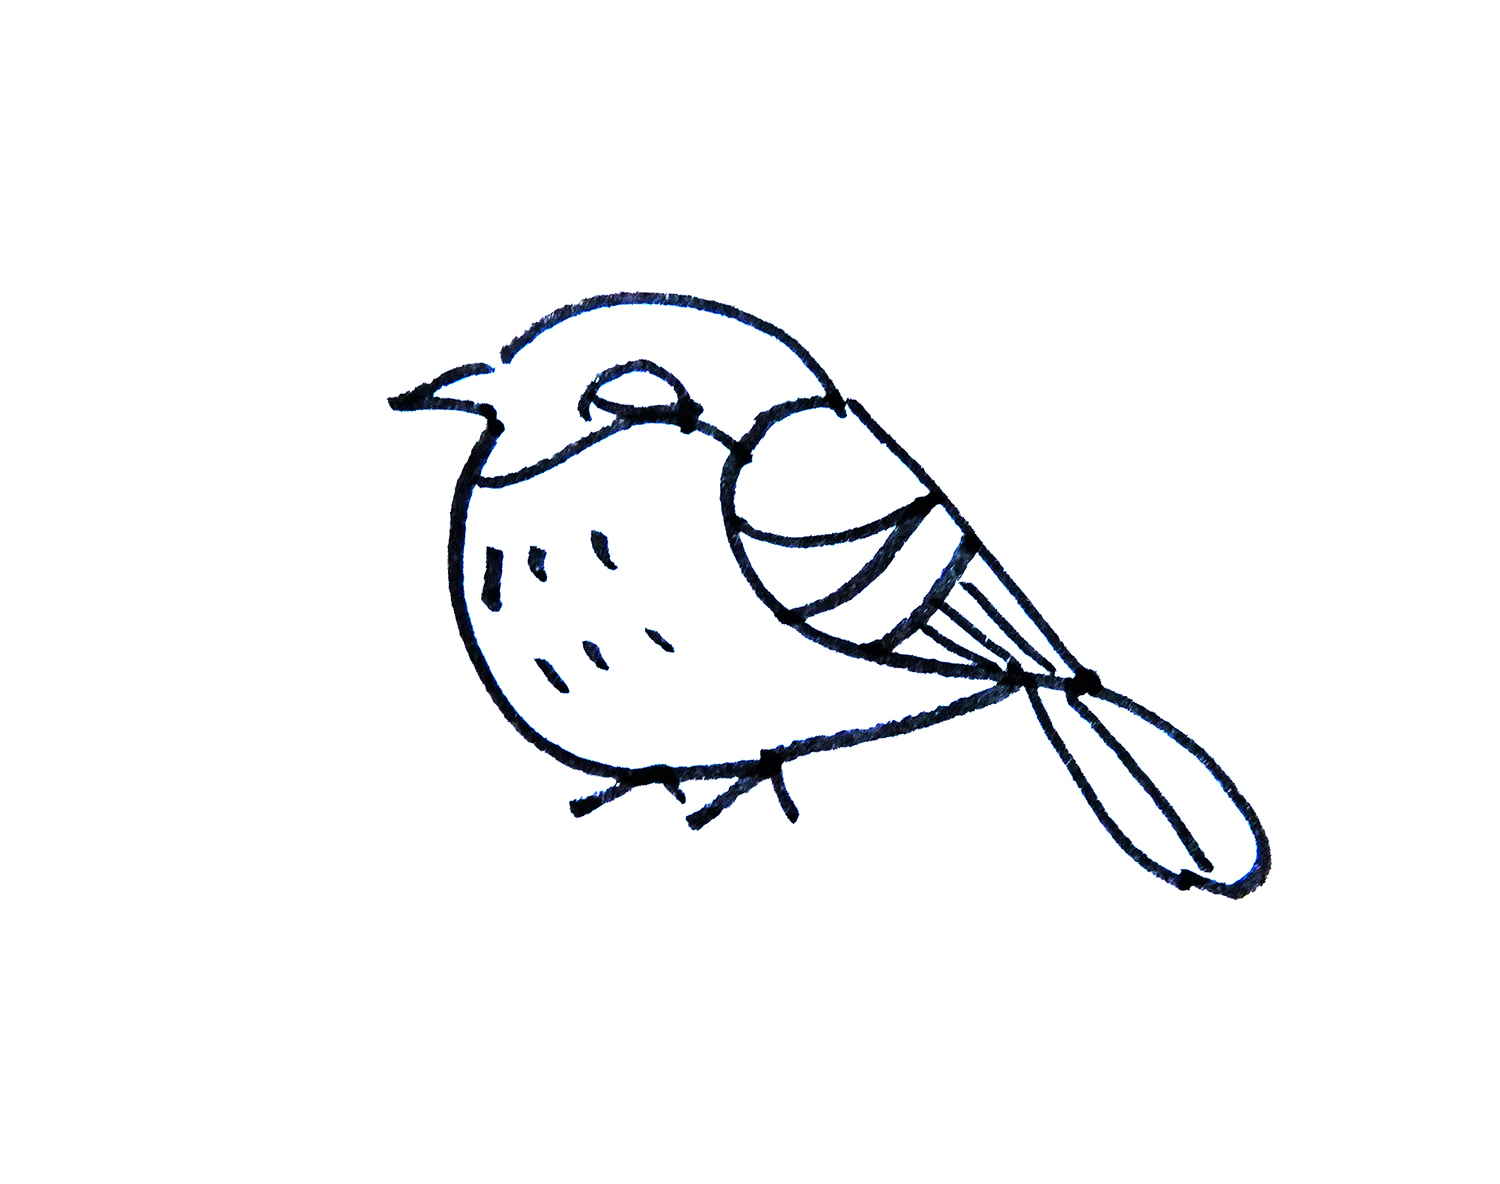 可爱卡通小鸟简笔画画法图片步骤 - 有点网 - 好手艺